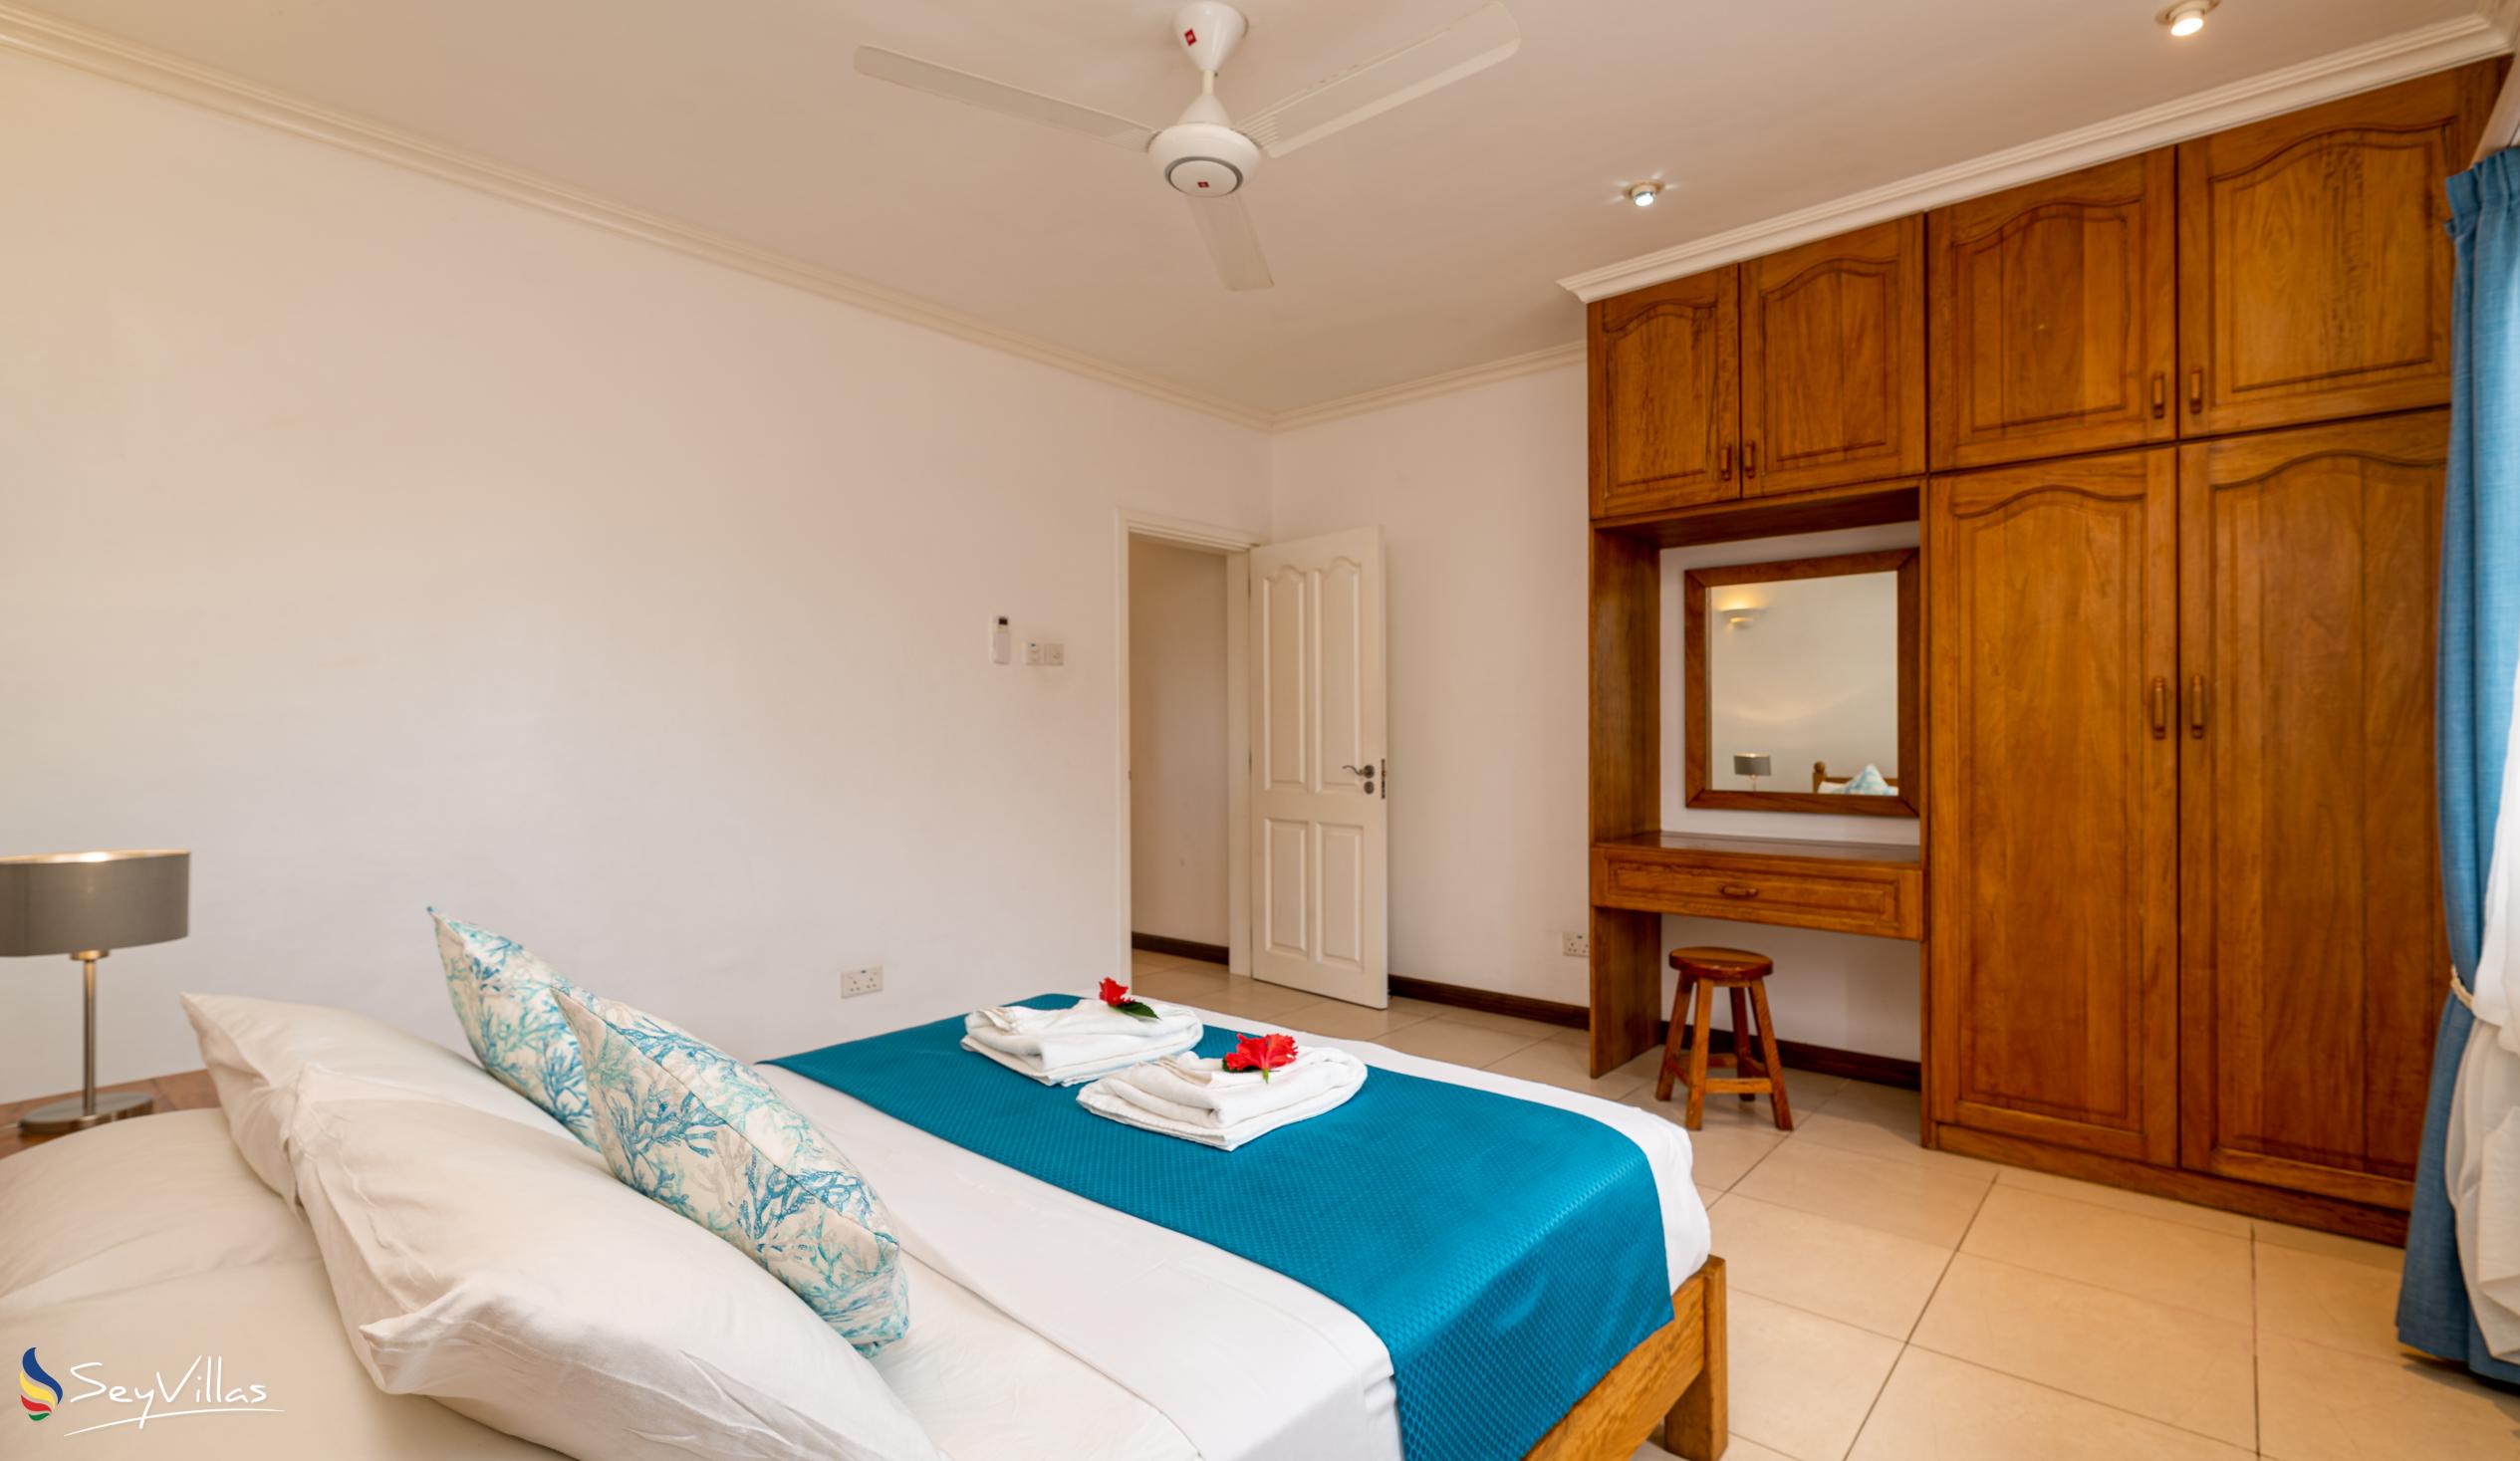 Photo 127: Marie-Laure Suites - 2-Bedroom Apartment - Mahé (Seychelles)